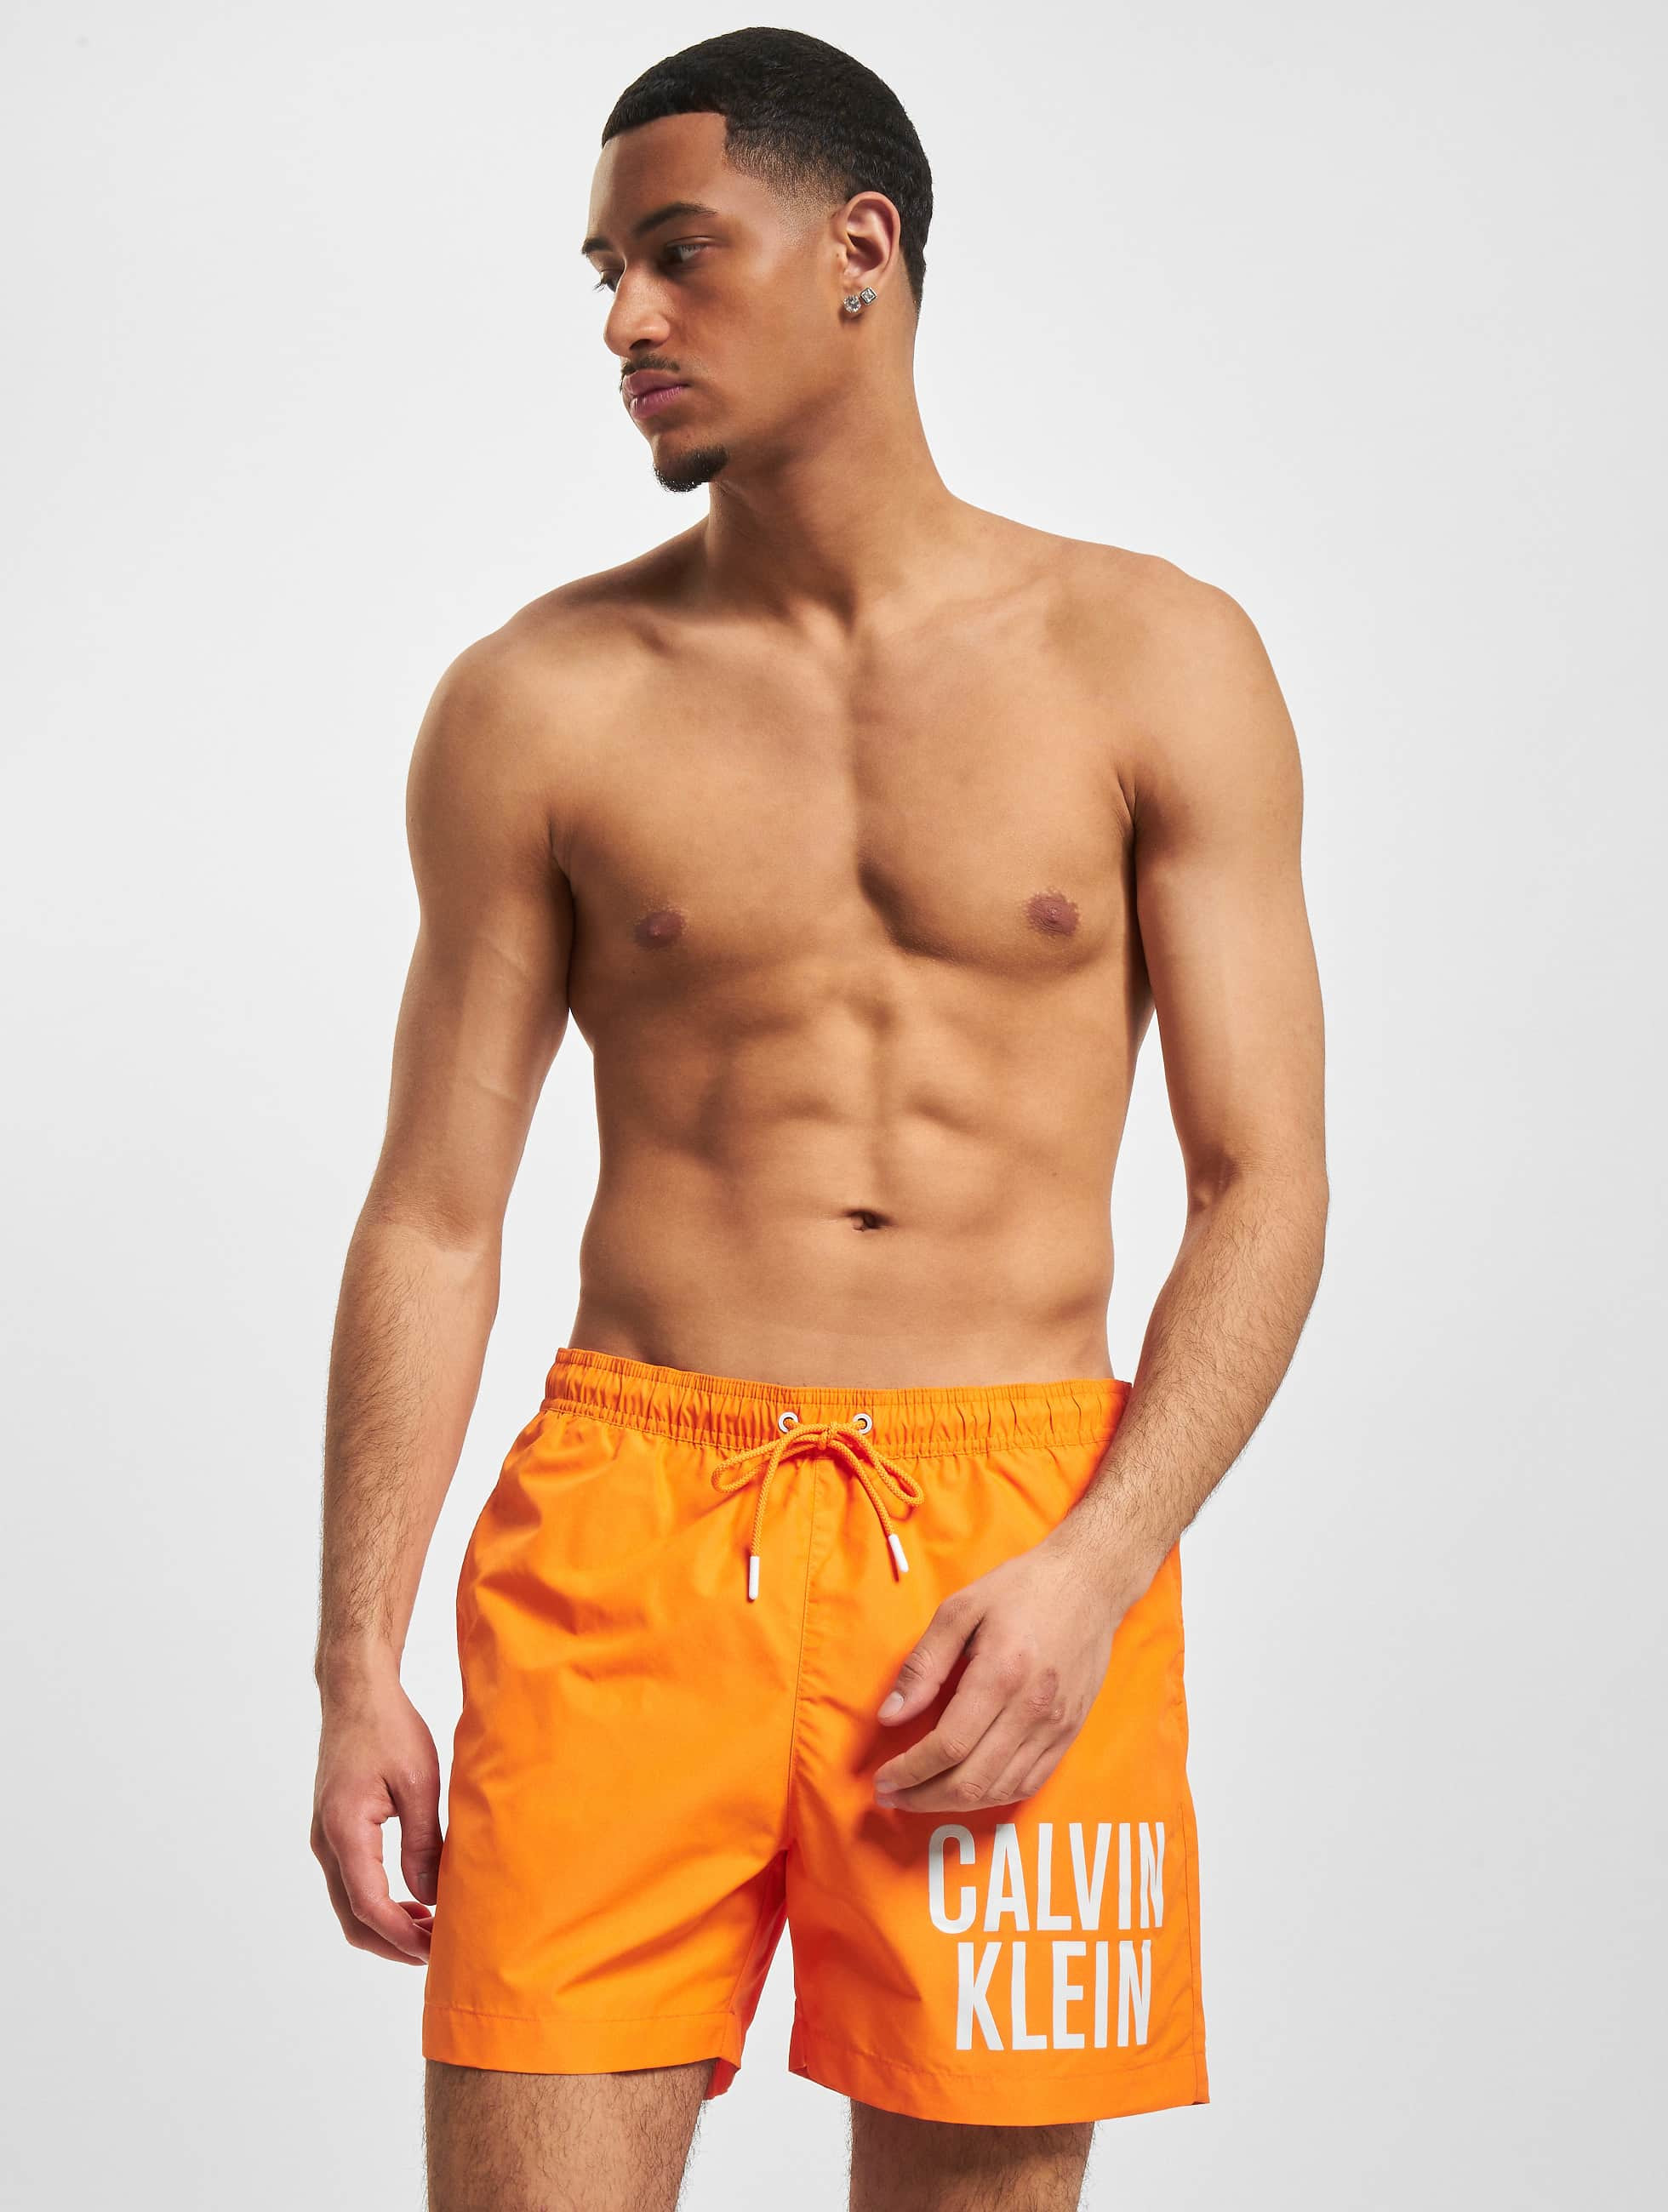 Nogen Jeg klager På kanten Calvin Klein Undertøj / Badetøj / Badebukser Medium Drawstring i orange  986556